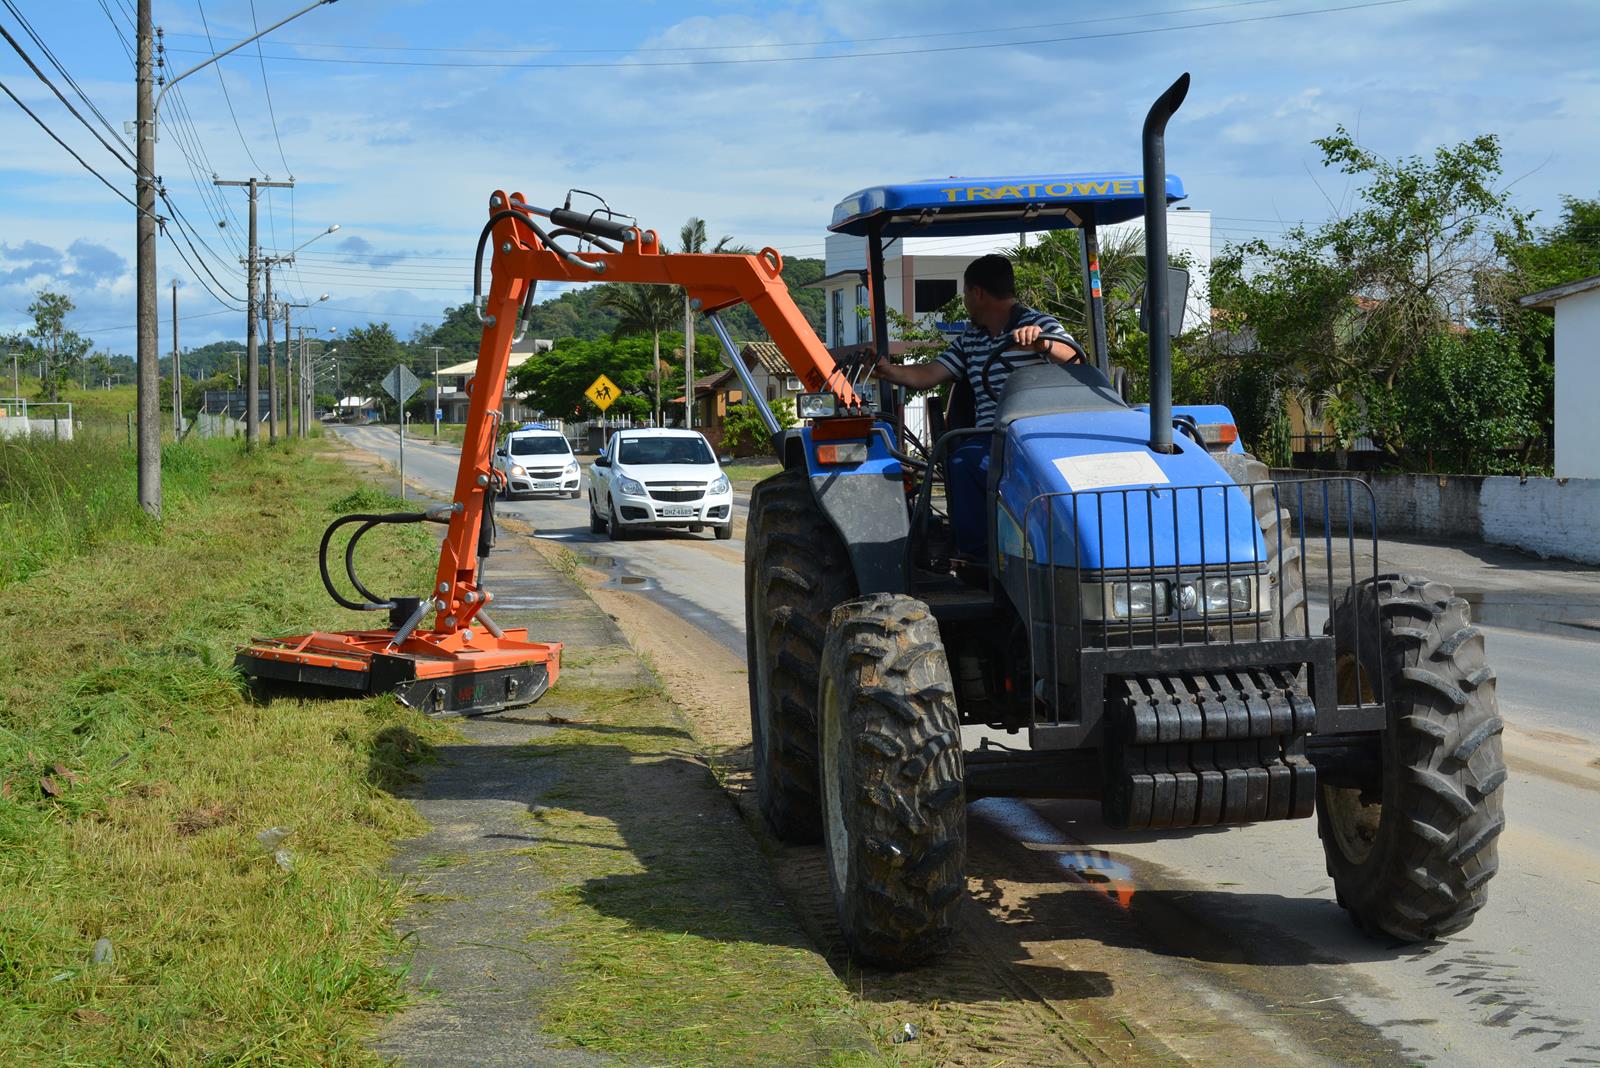 Criciúma | Equipamento auxilia a limpar a cidade